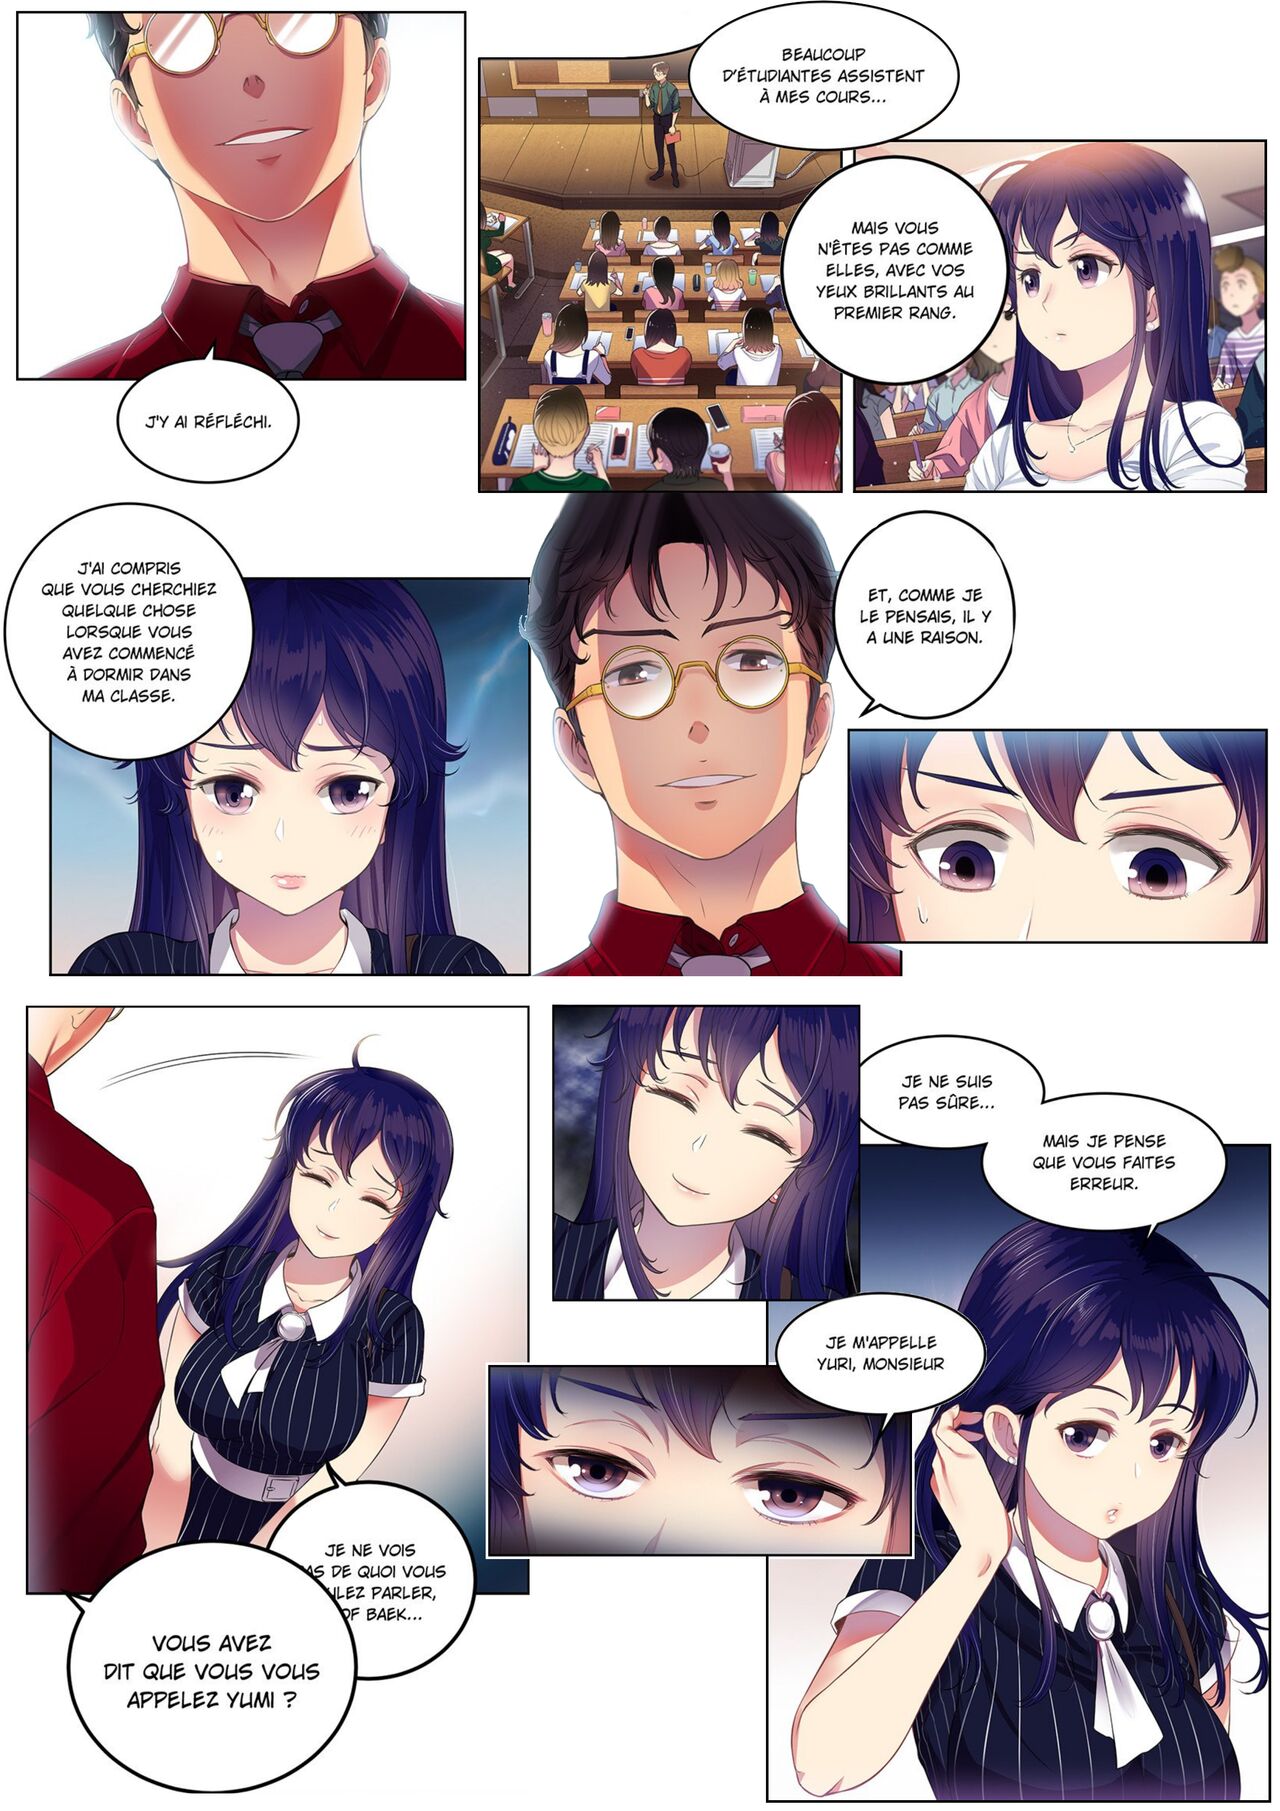 La double vie de Yuri numero d'image 64